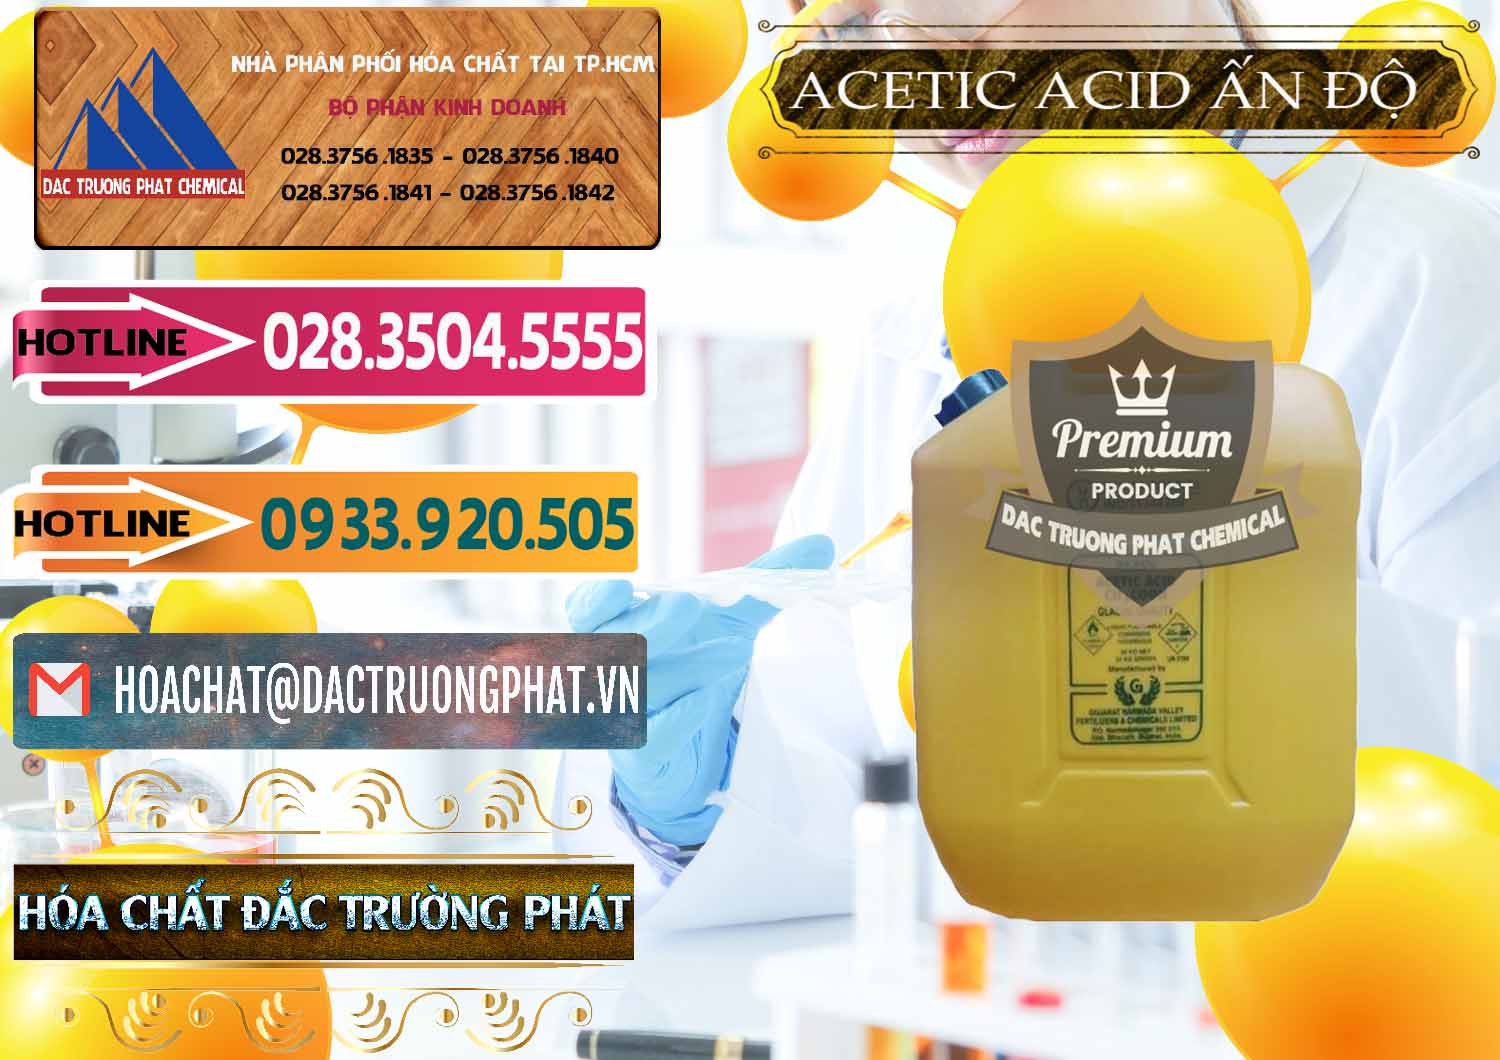 Công ty chuyên cung cấp và bán Acetic Acid – Axit Acetic Ấn Độ India - 0359 - Cty kinh doanh và cung cấp hóa chất tại TP.HCM - dactruongphat.vn